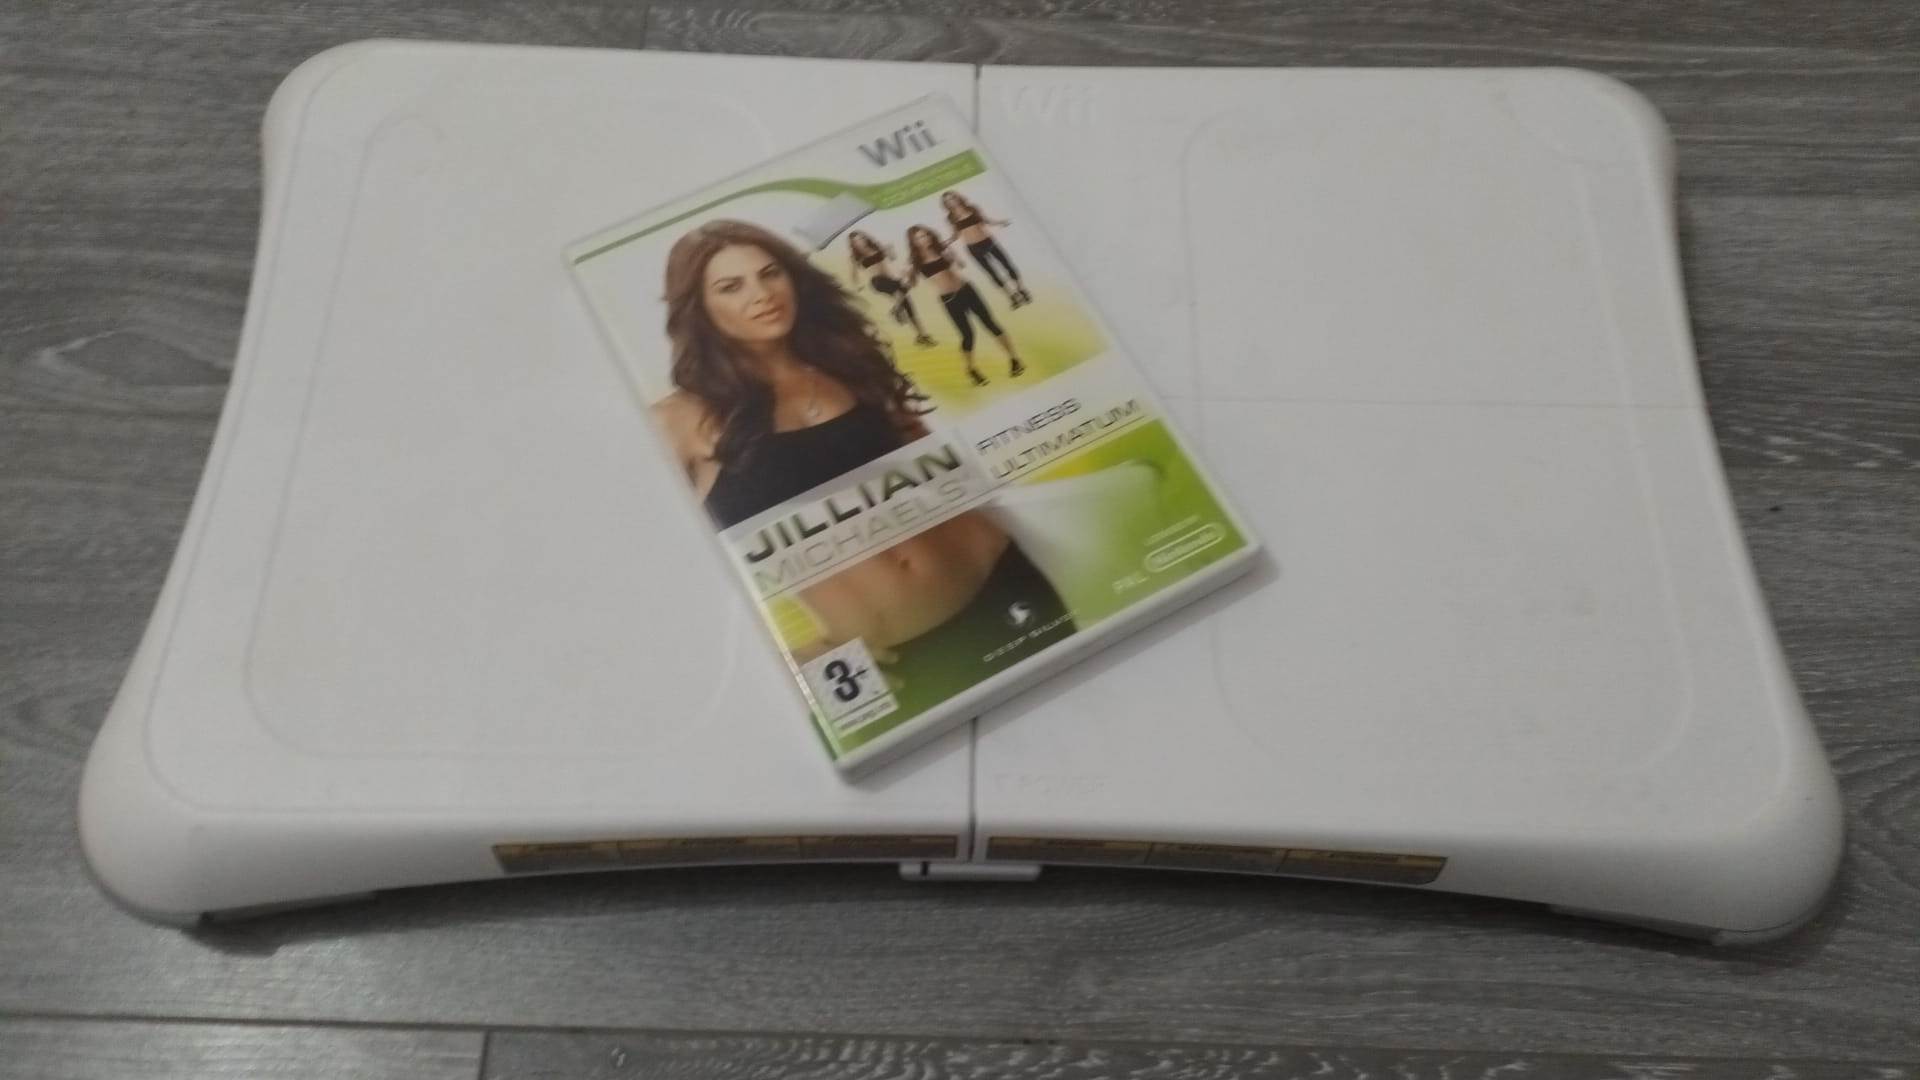 Wii Fit Ballance Board + Julian Michaels Fitness Ultimatum - Nintendo Wii